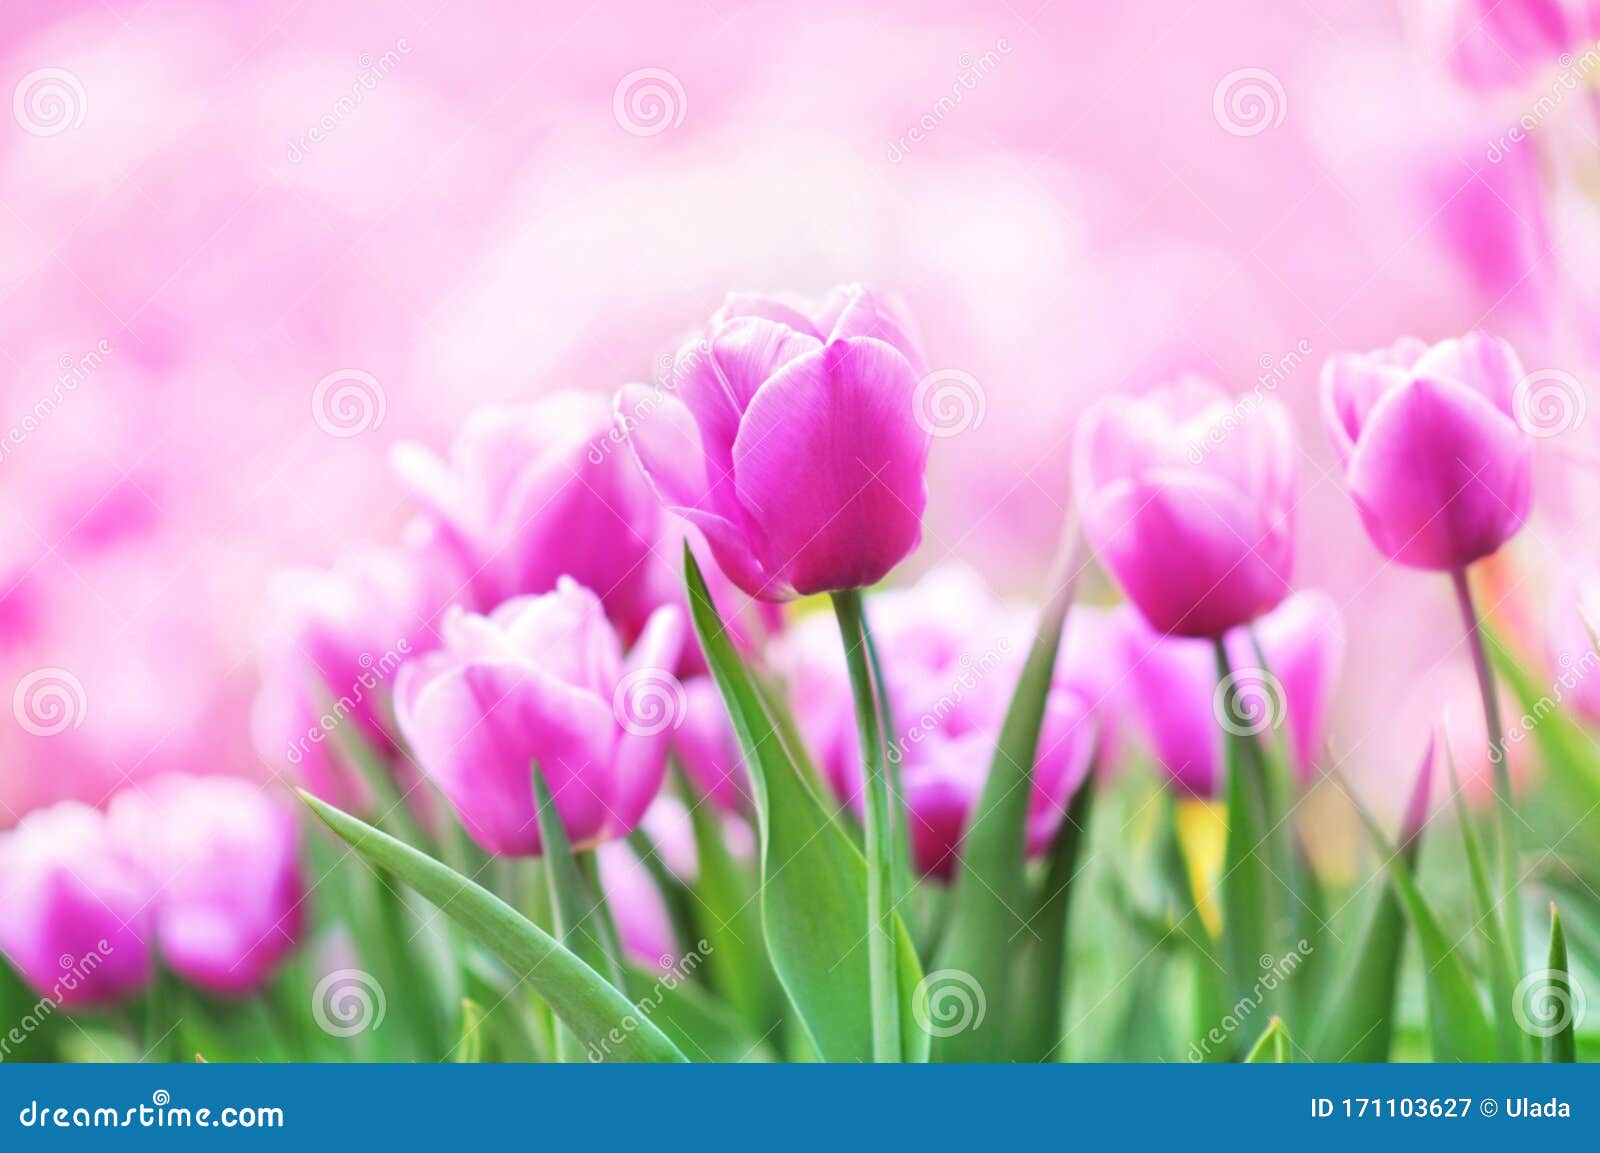 Tulips: Sức sống và sắc đẹp của hoa tulip sẽ chinh phục bạn ngay từ cái nhìn đầu tiên. Khi những cánh hoa này được chụp lại bởi ống kính của máy ảnh, mỗi chi tiết trở nên lấp lánh và cuốn hút đến kỳ lạ.